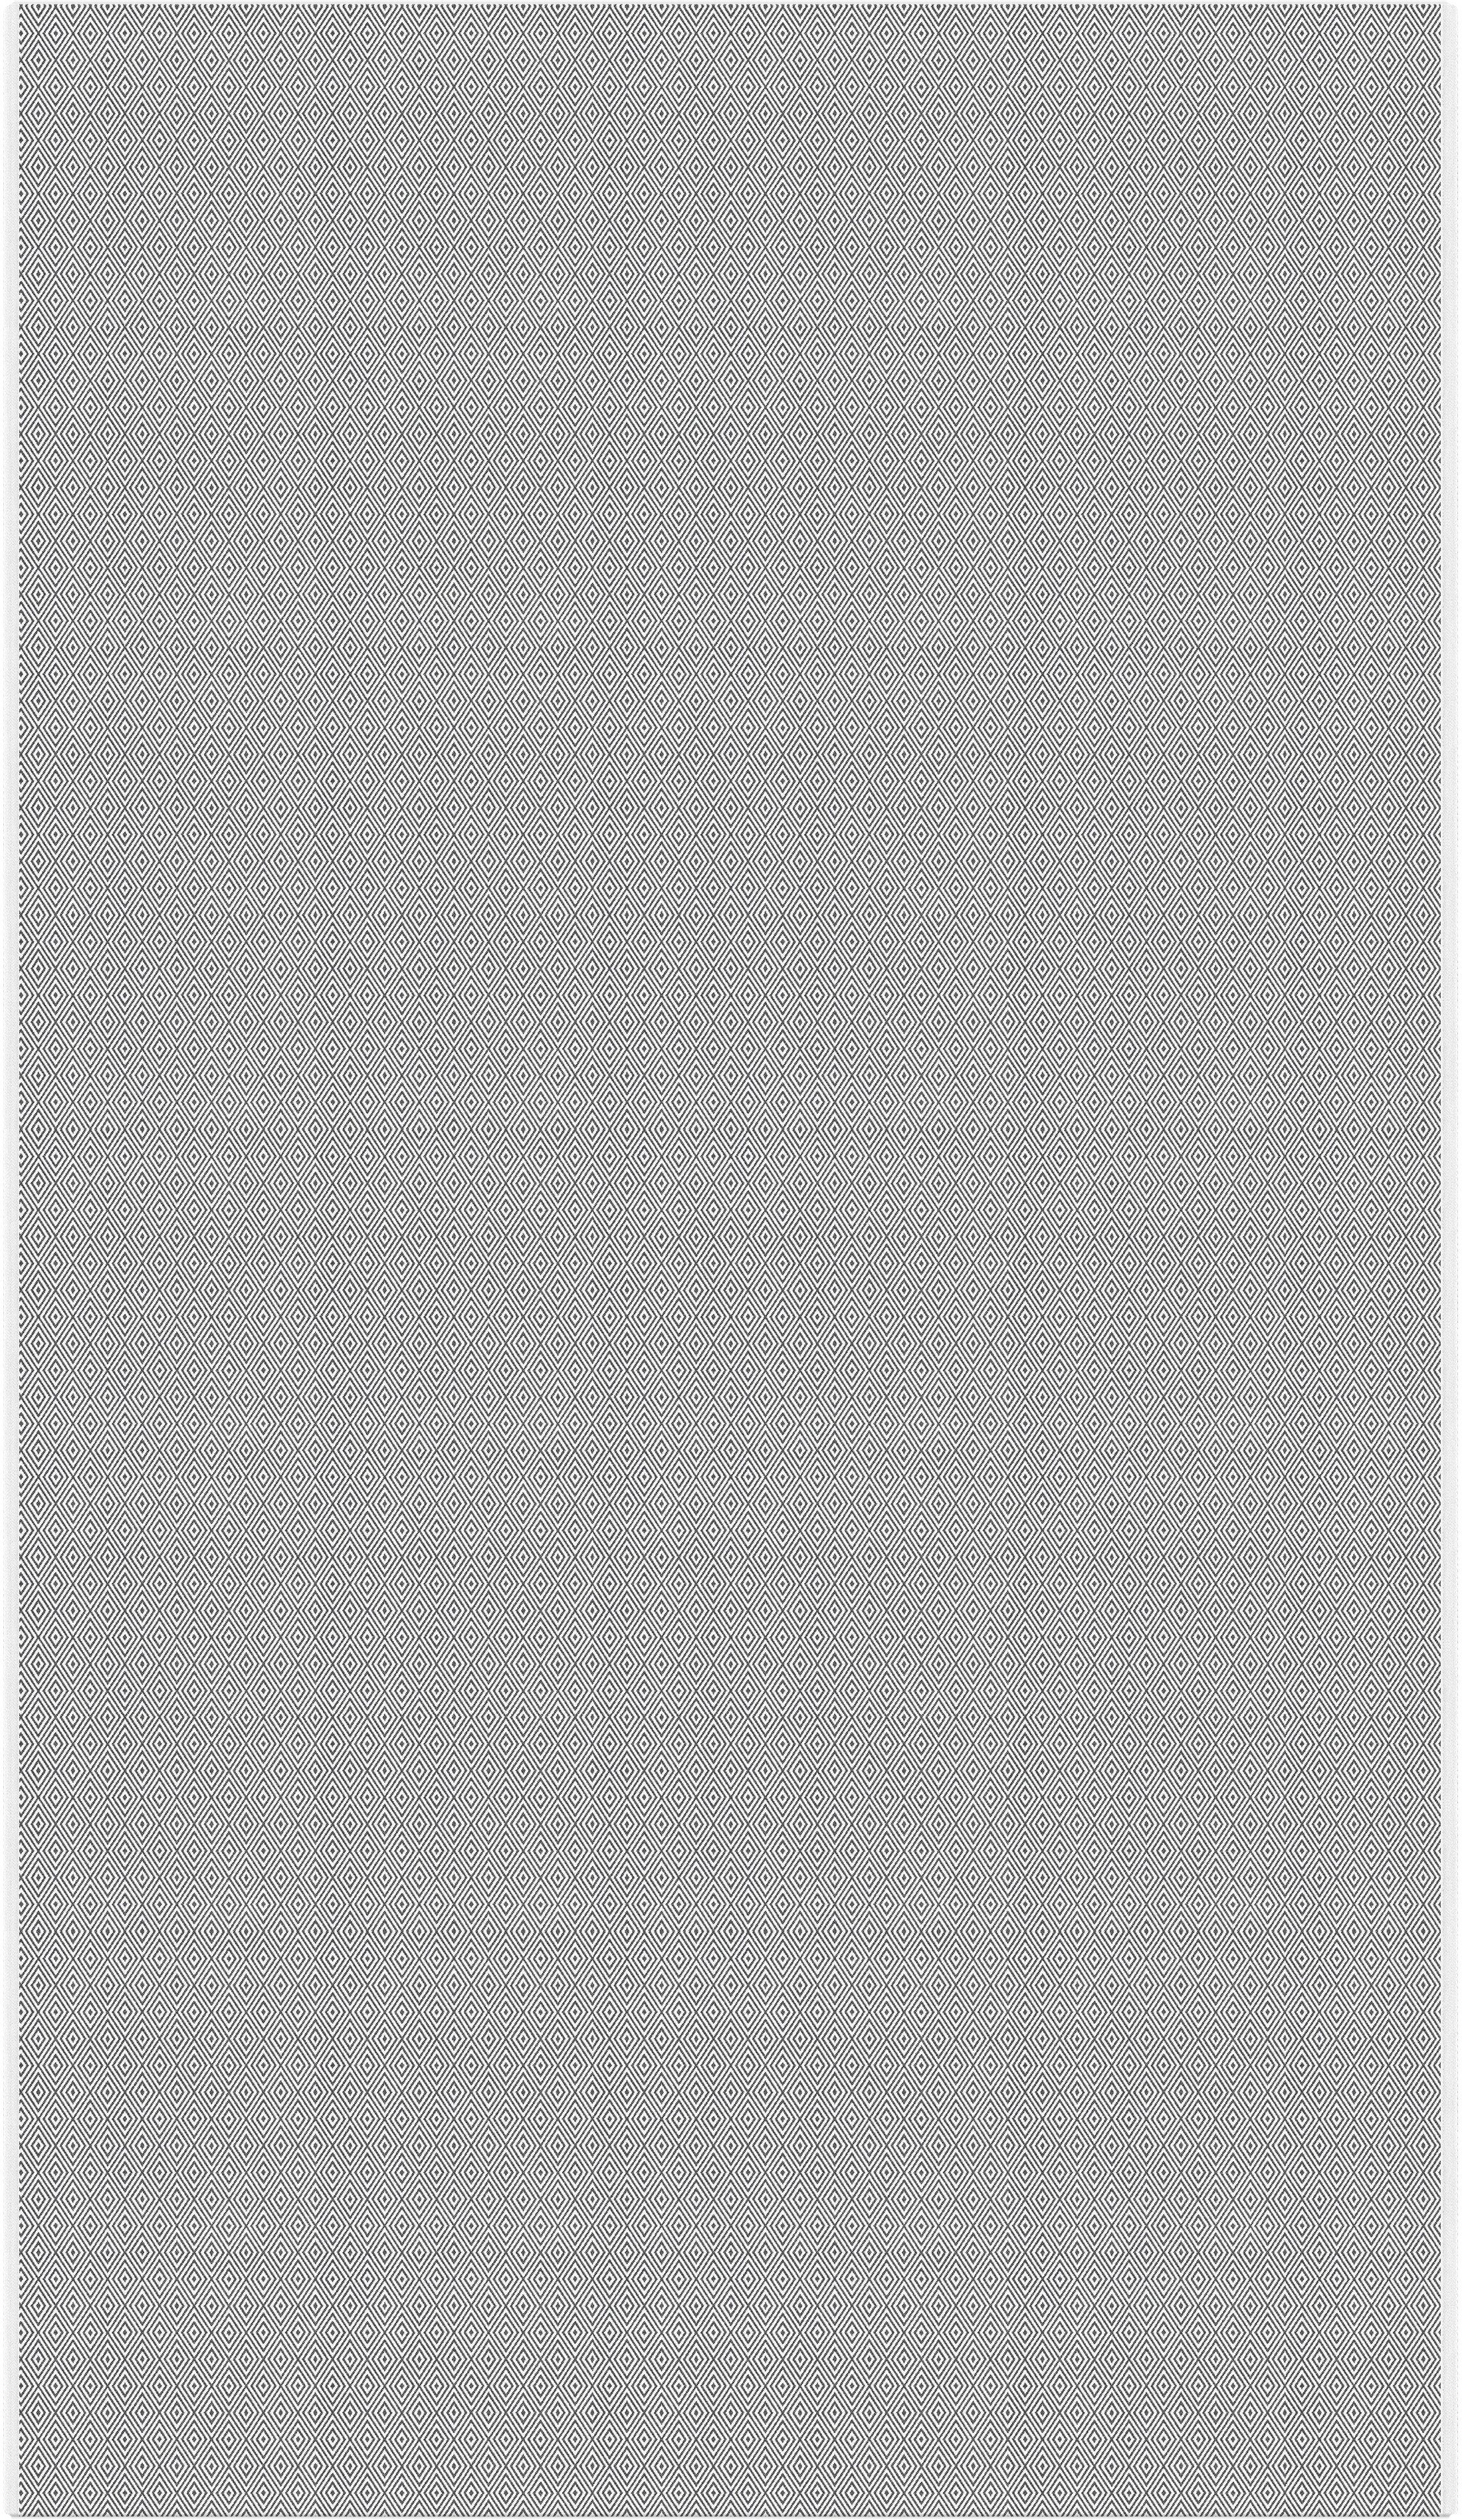 Ekelund Tischdecke Tischdecke Gåsöga 090 145x210 cm, Pixel gewebt (3-farbig)